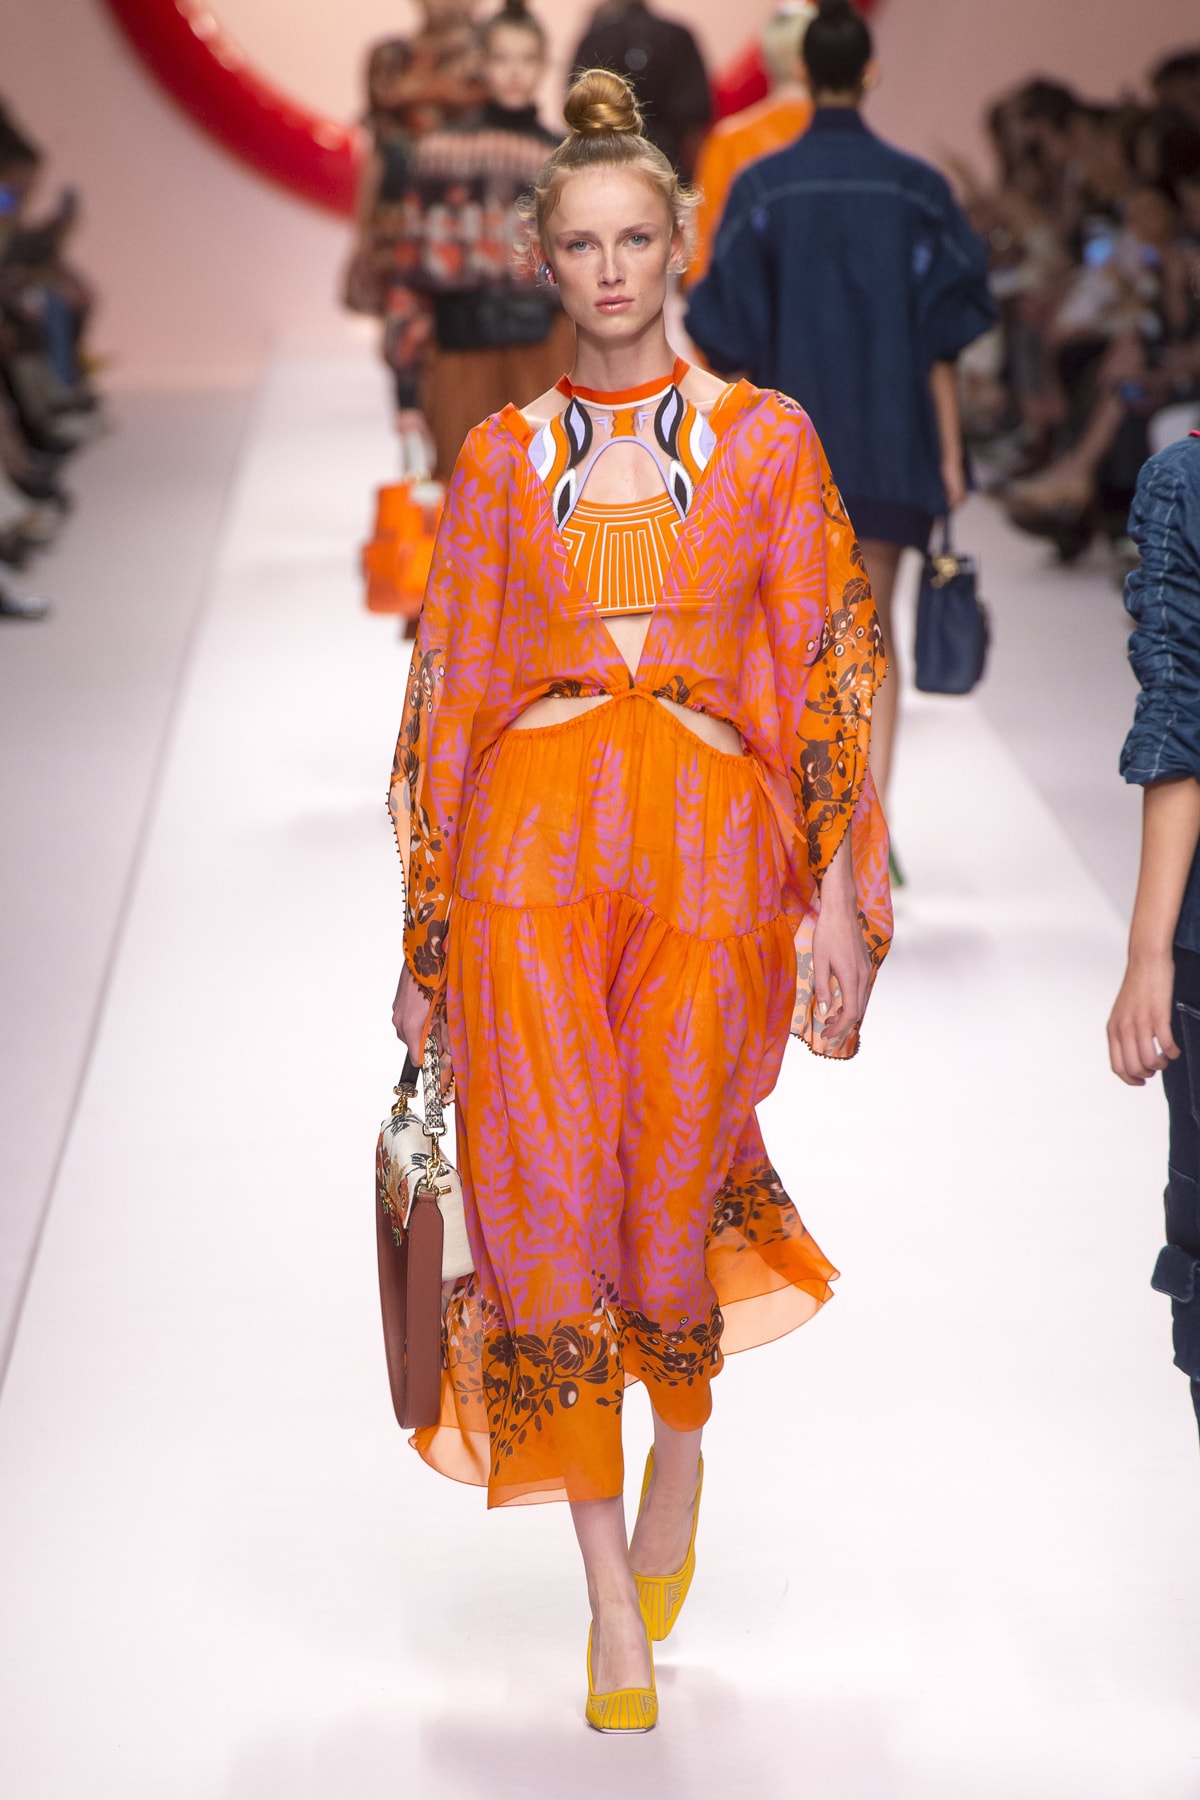 Fendi Karl Lagerfeld Spring Summer 2019 Milan Fashion Week Show Collection Dress Orange Pink